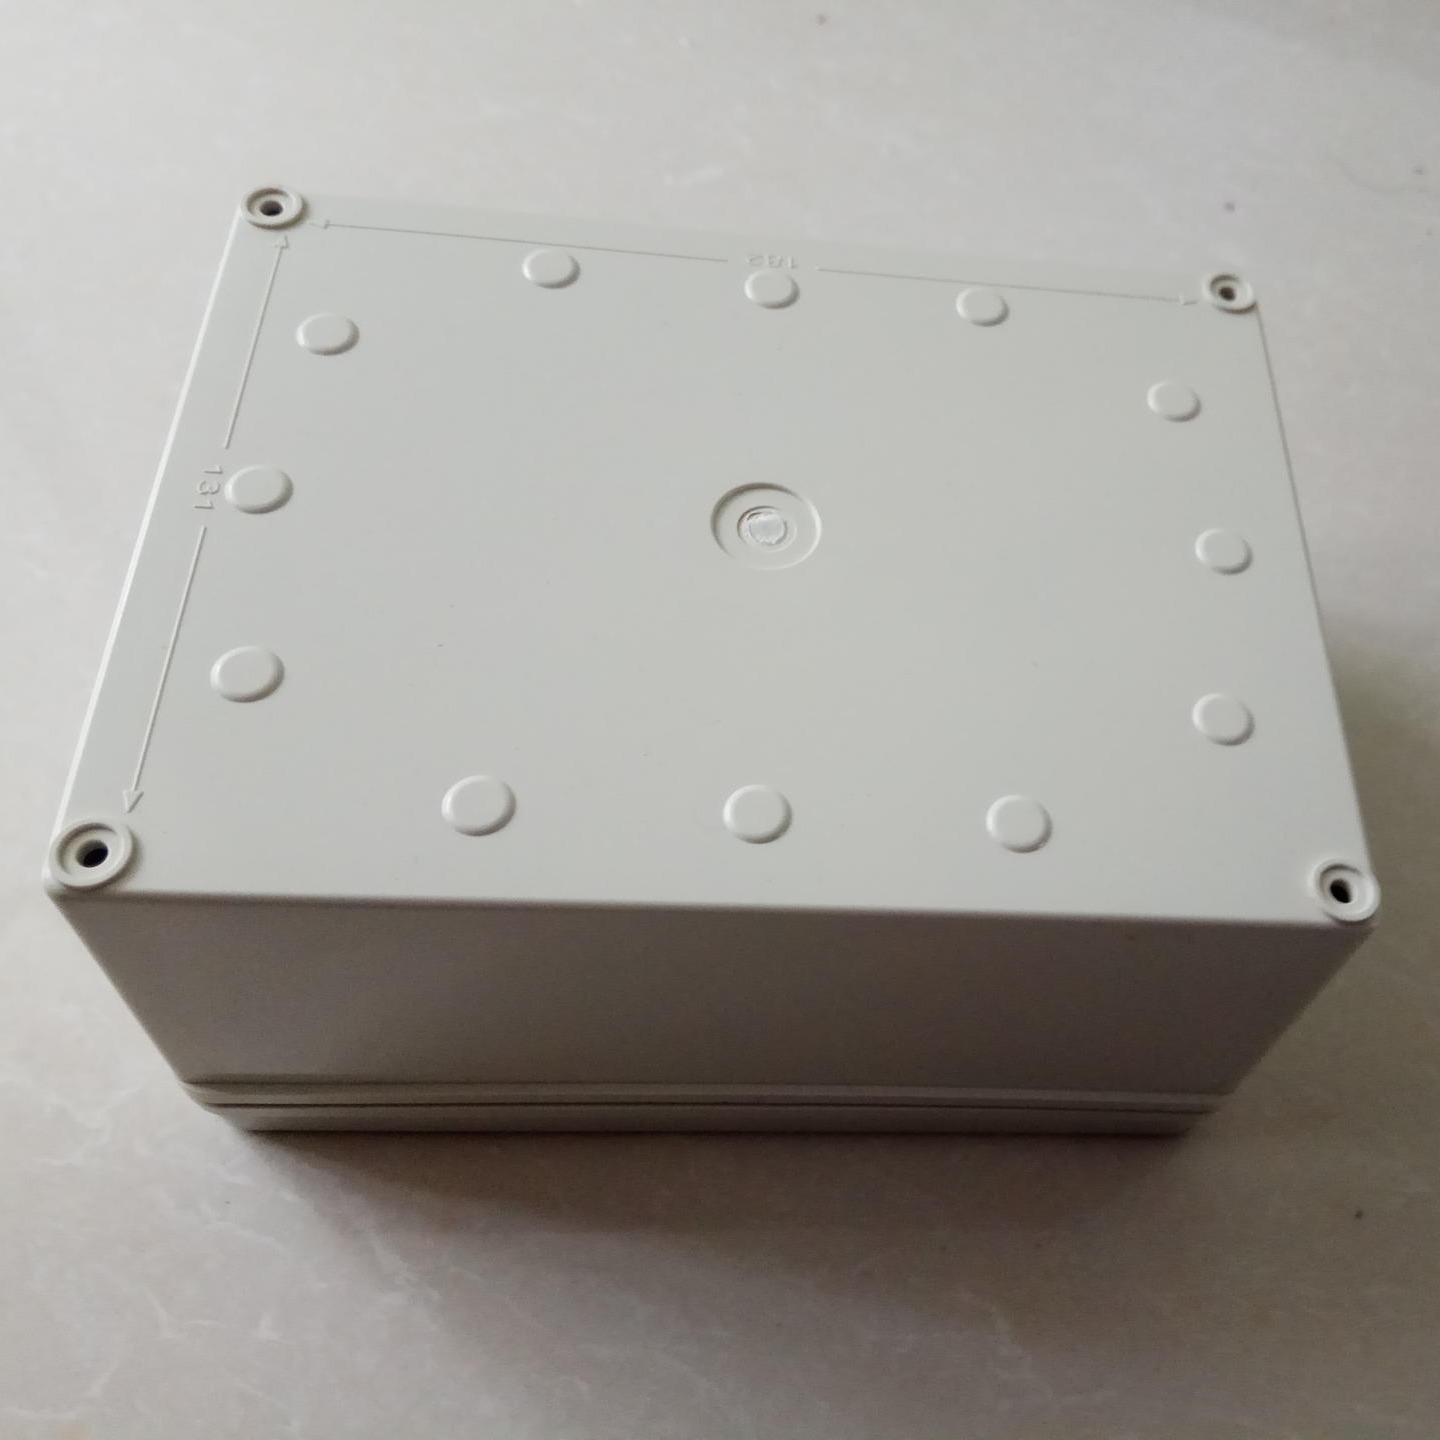 200-150-100塑料螺丝塑料仪表盒 塑料壳体 防水盒 防水盒 欧式防水盒